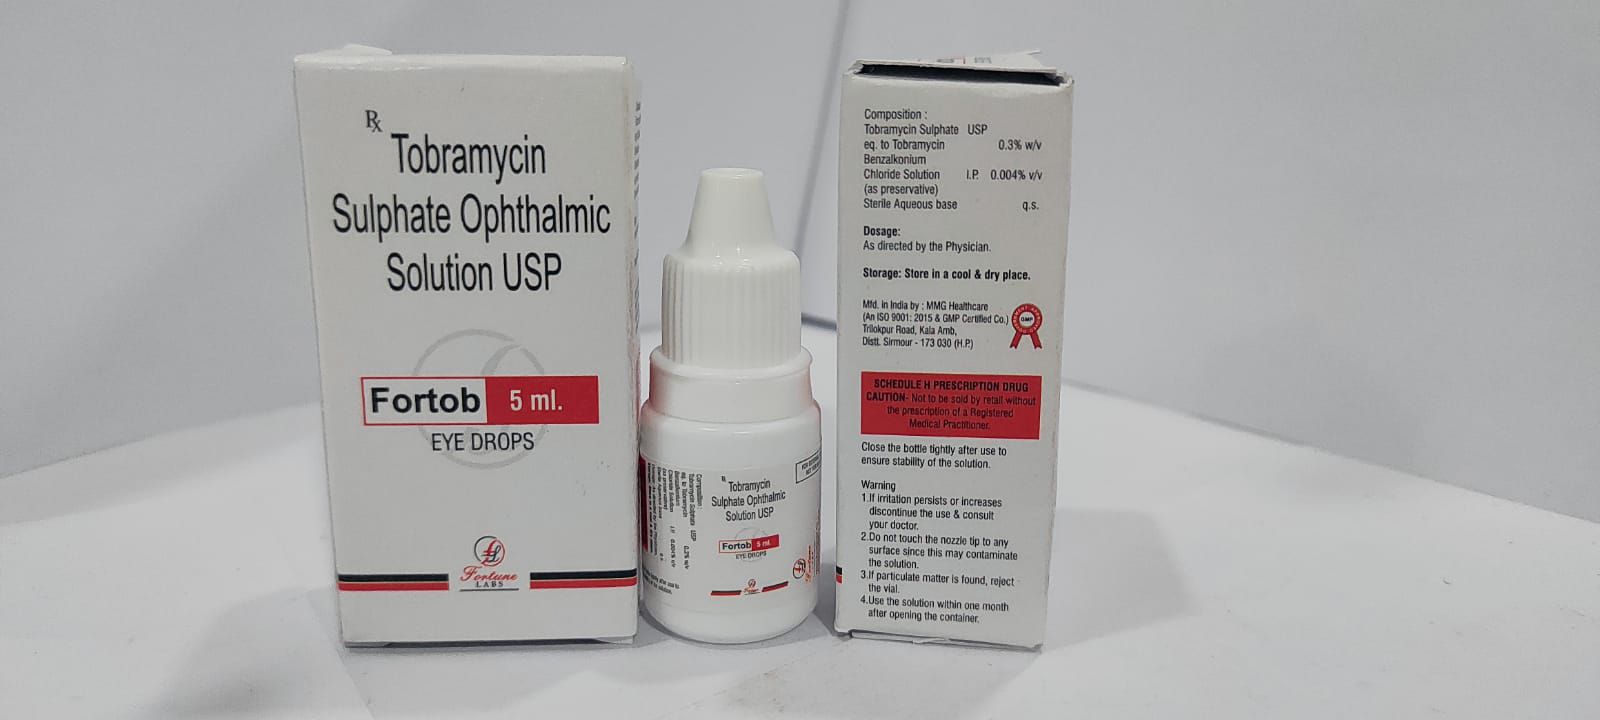 tobramycin benzalkonium 0.3% w/v+ chloride solution ip 0.004%
w/v